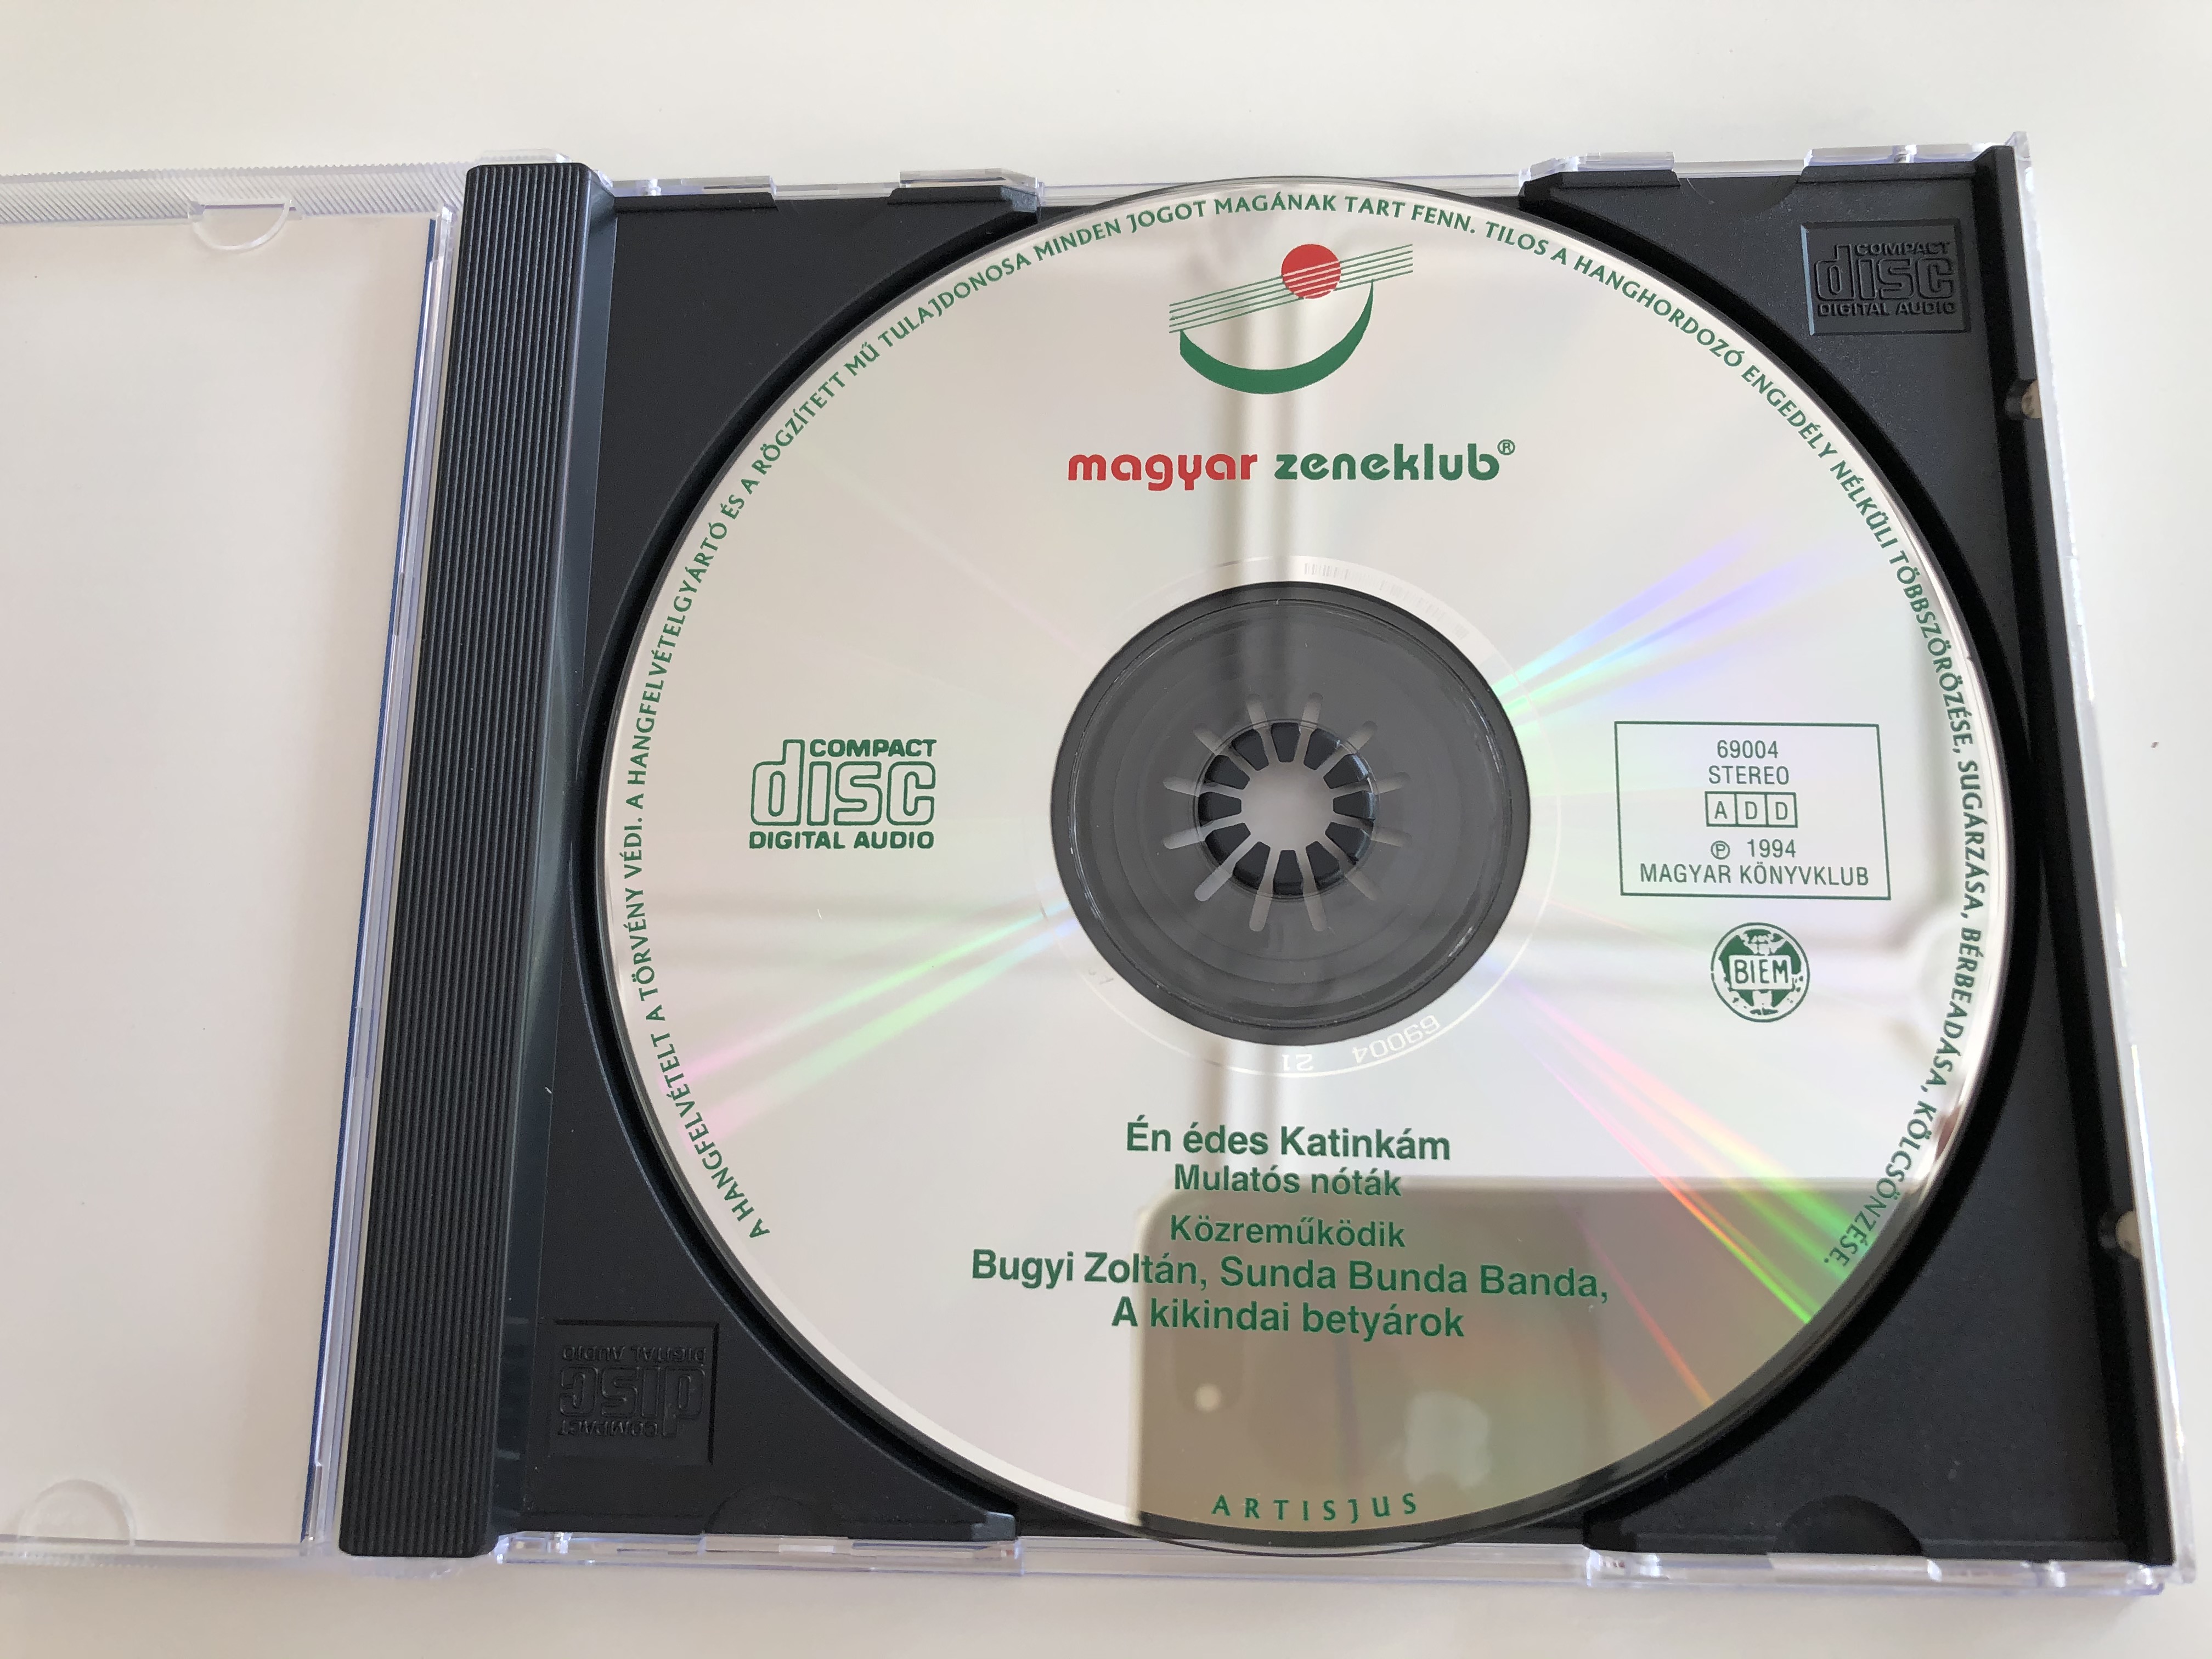 en-edes-katinkam-mulat-s-n-t-k-bugyi-zolt-n-sunda-bunda-banda-a-kikindai-bety-rok-magyar-konyvklub-audio-cd-1994-69004-4-.jpg